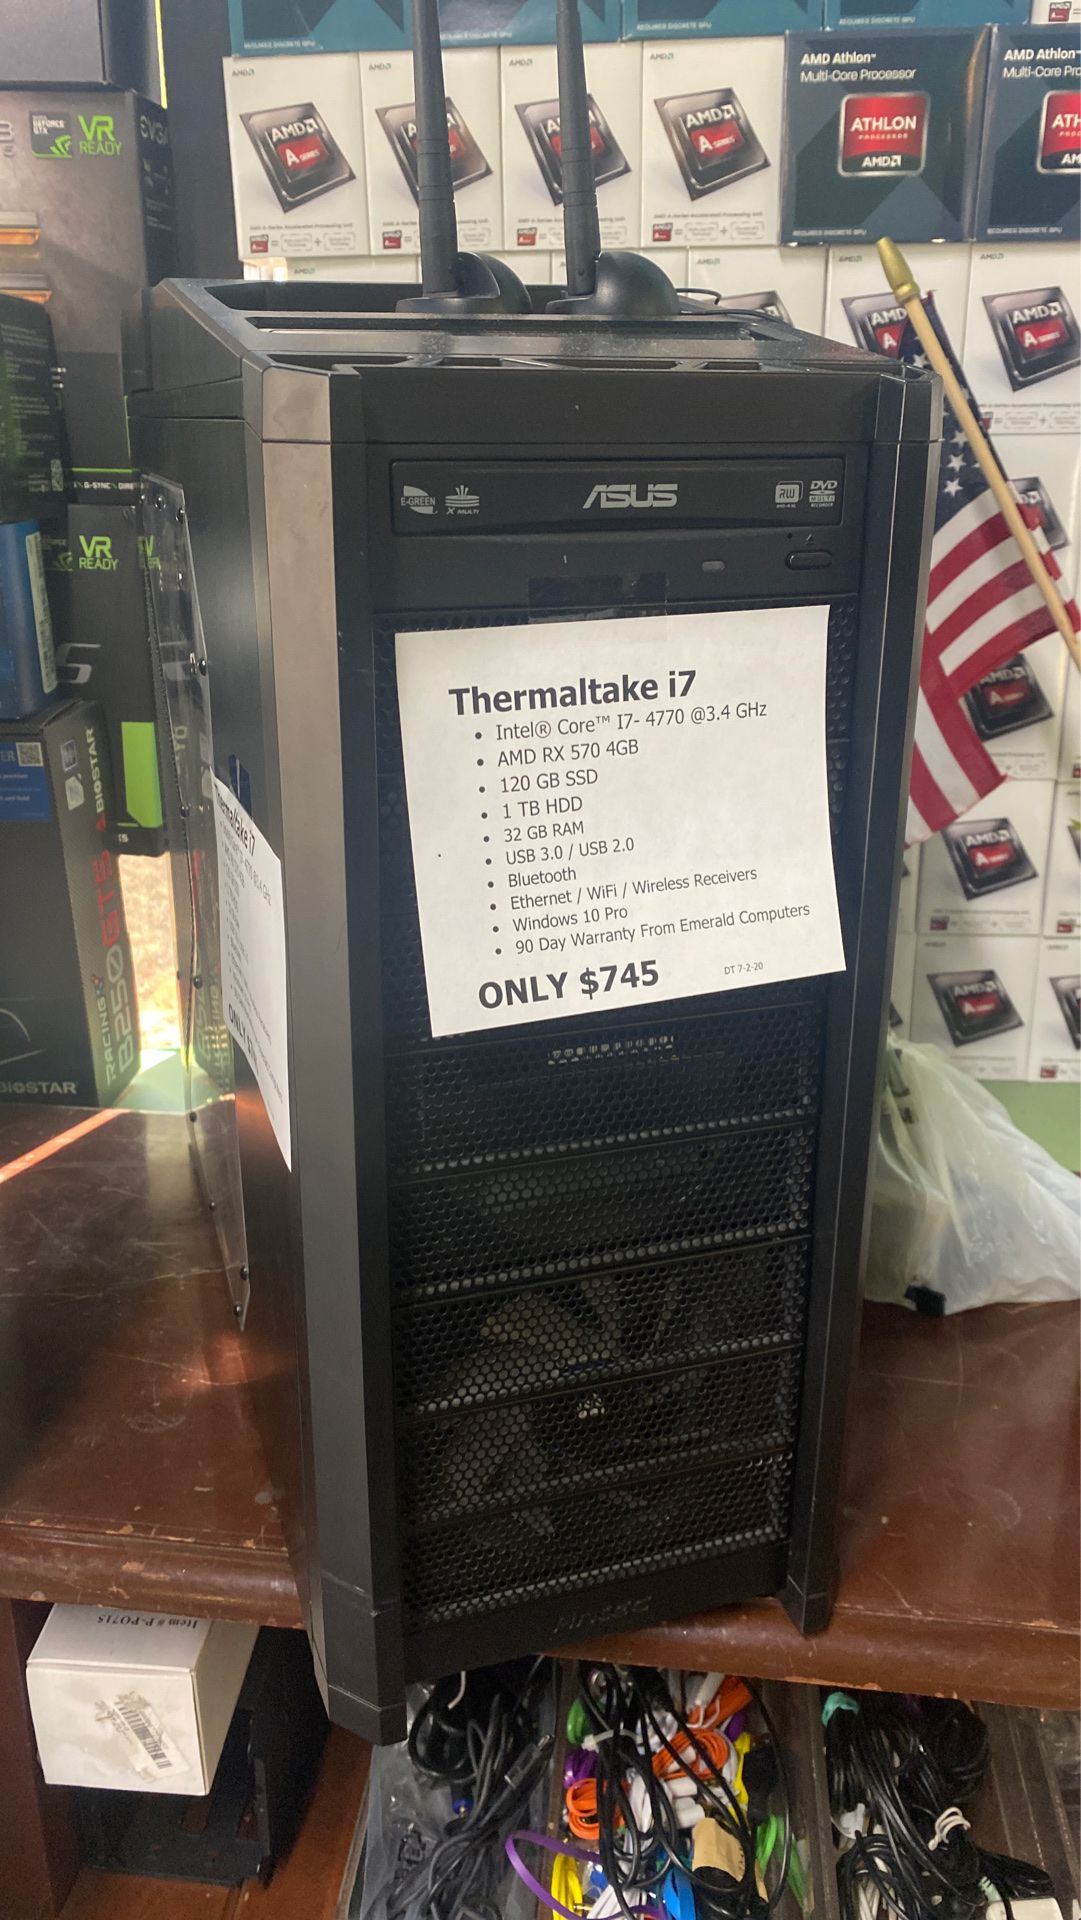 Thermaltake i7 gaming computer